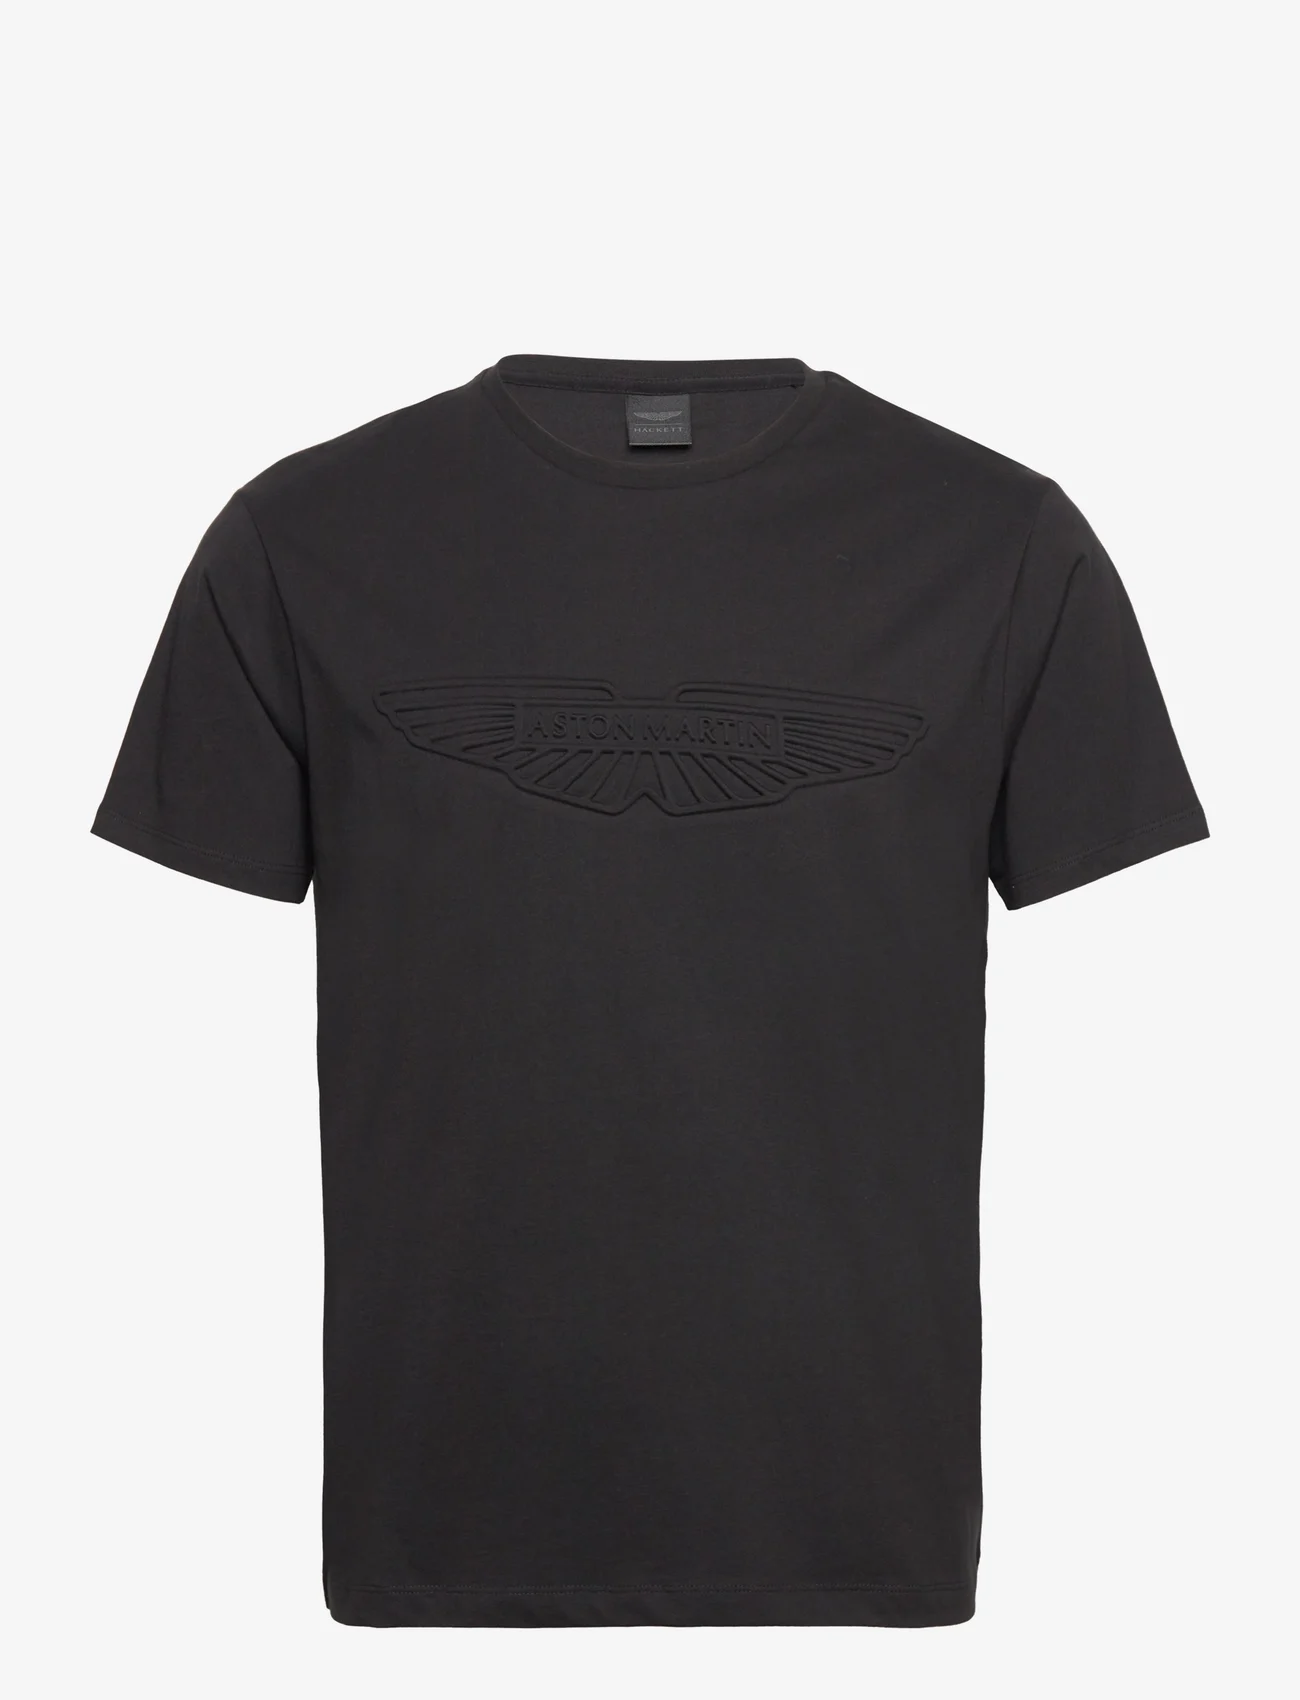 Hackett London - AM EMBOSS TEE - kortermede t-skjorter - black - 0